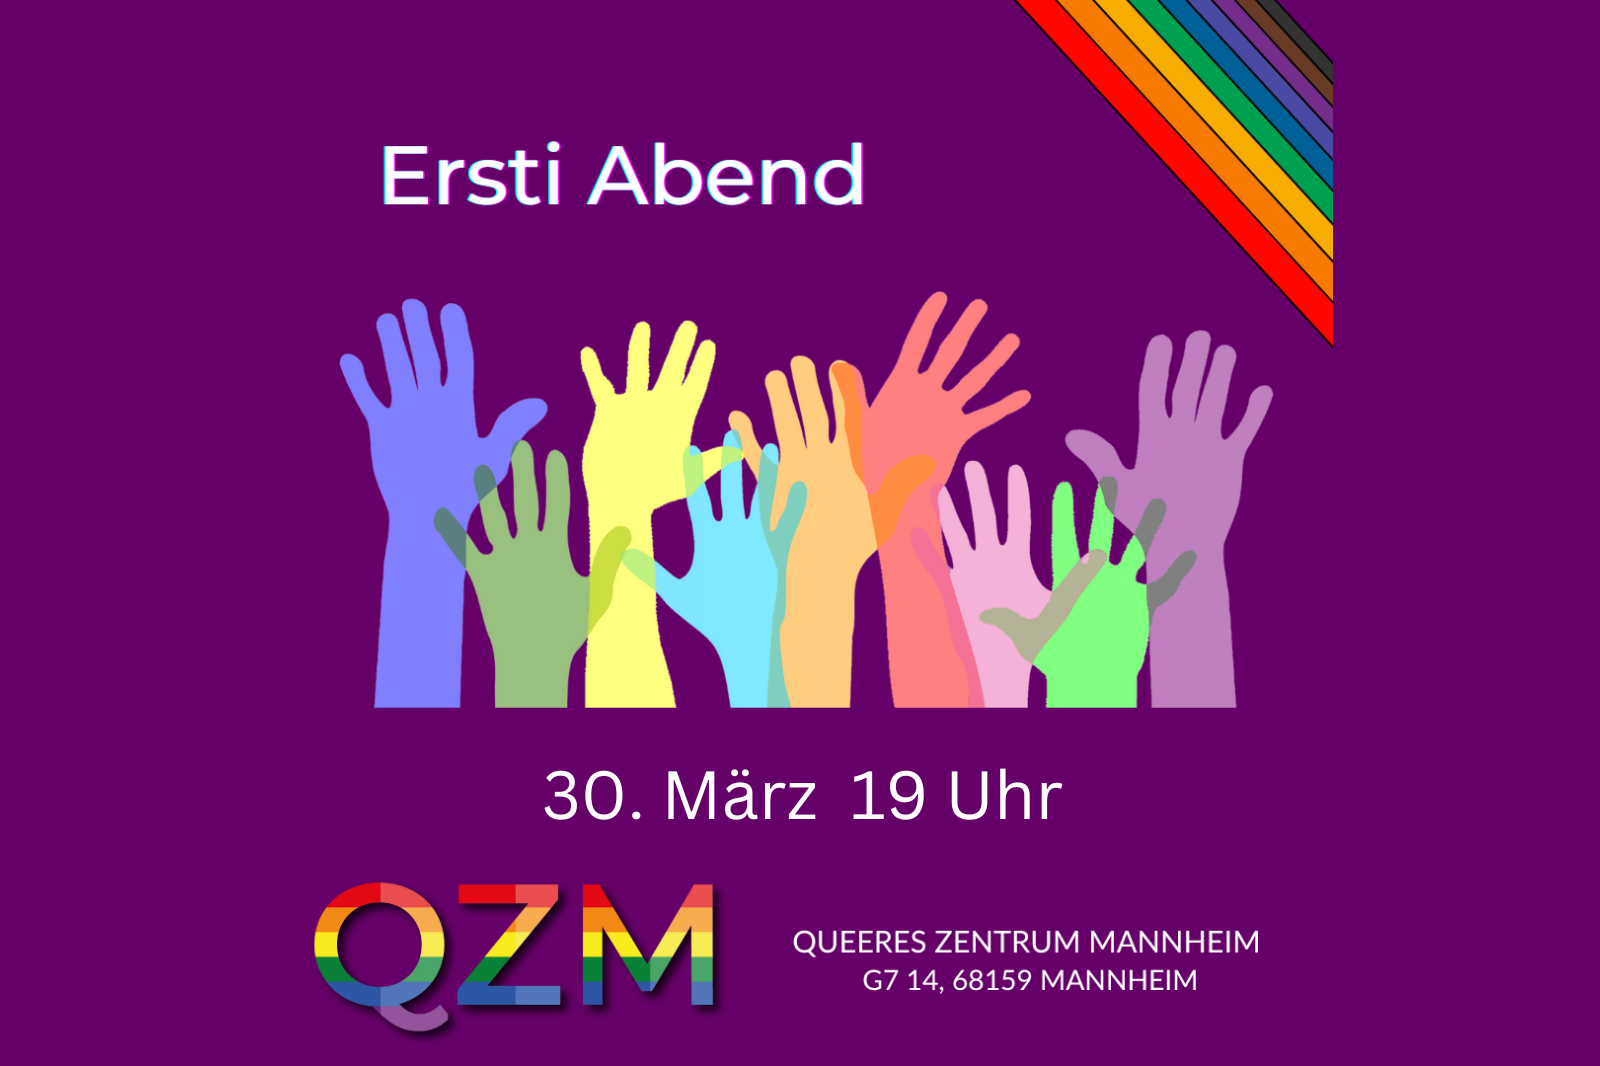 Symbolbild für die Veranstaltung "Ersti Abend" am 30.03. um 19:00 Uhr. Zu sehen sind verschiedenfarbige Hände, die sich melden - in diesem Fall für freiwilliges Engagement.